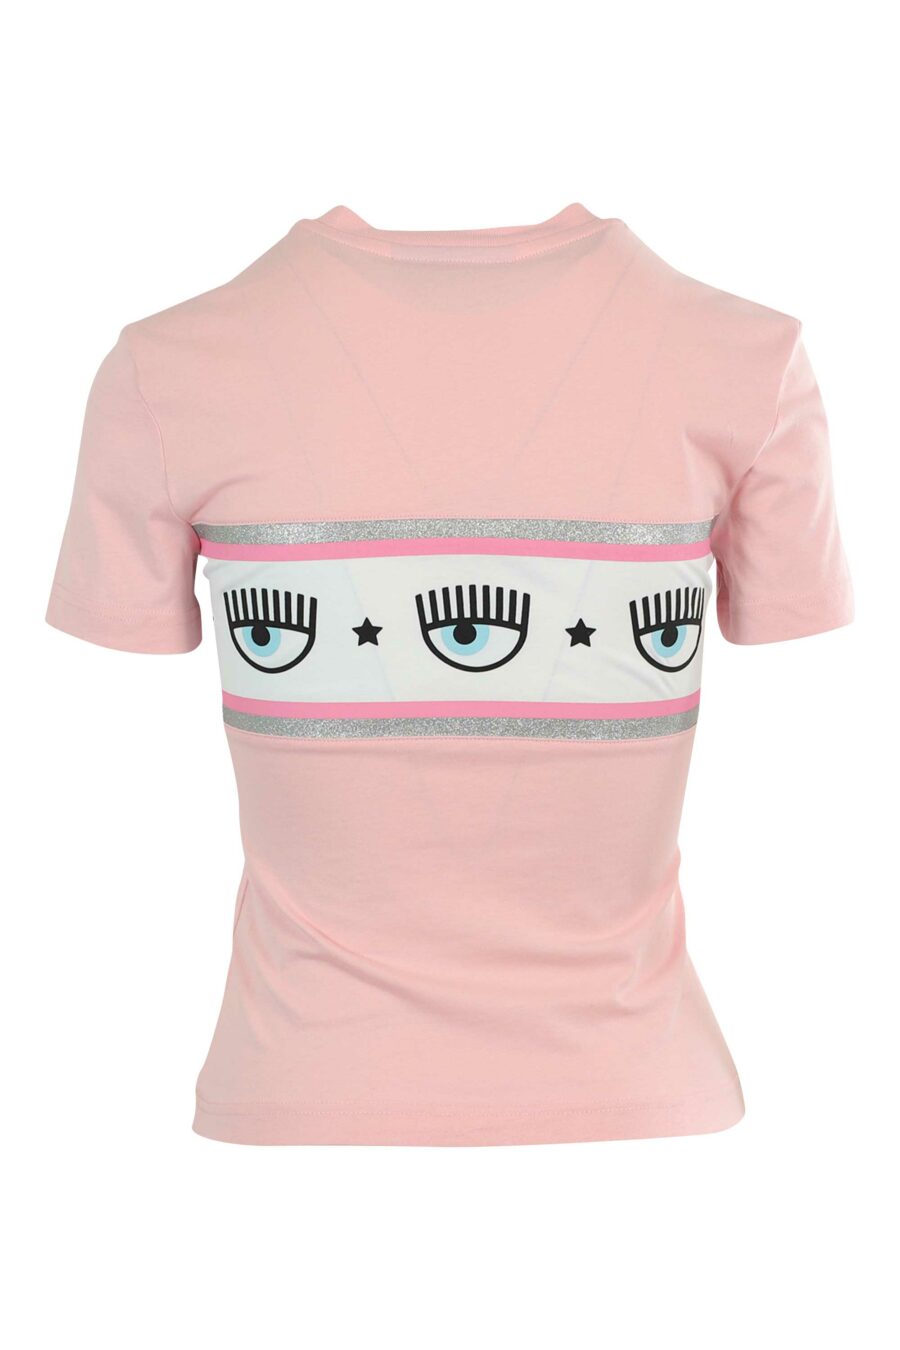 Camiseta rosa con logo ojo en cinta - 8052672419958 2